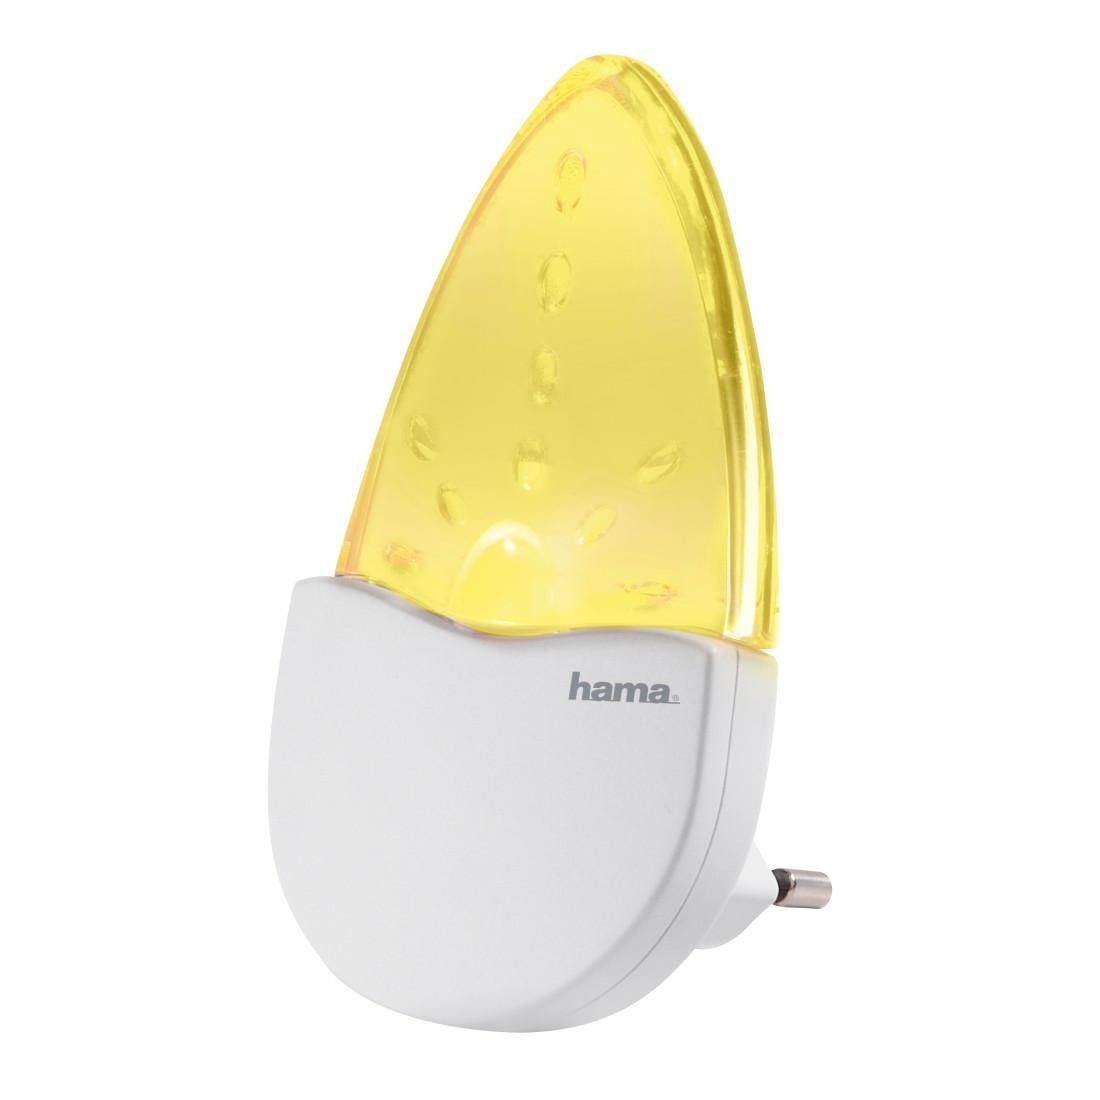 Hama LED Nachtlicht Nachtlampe Steckdose Schlafzimmer, Nachtlichtfunktion, integriert, LED für Bernstein, Kinder, Baby, fest bernsteinfarben